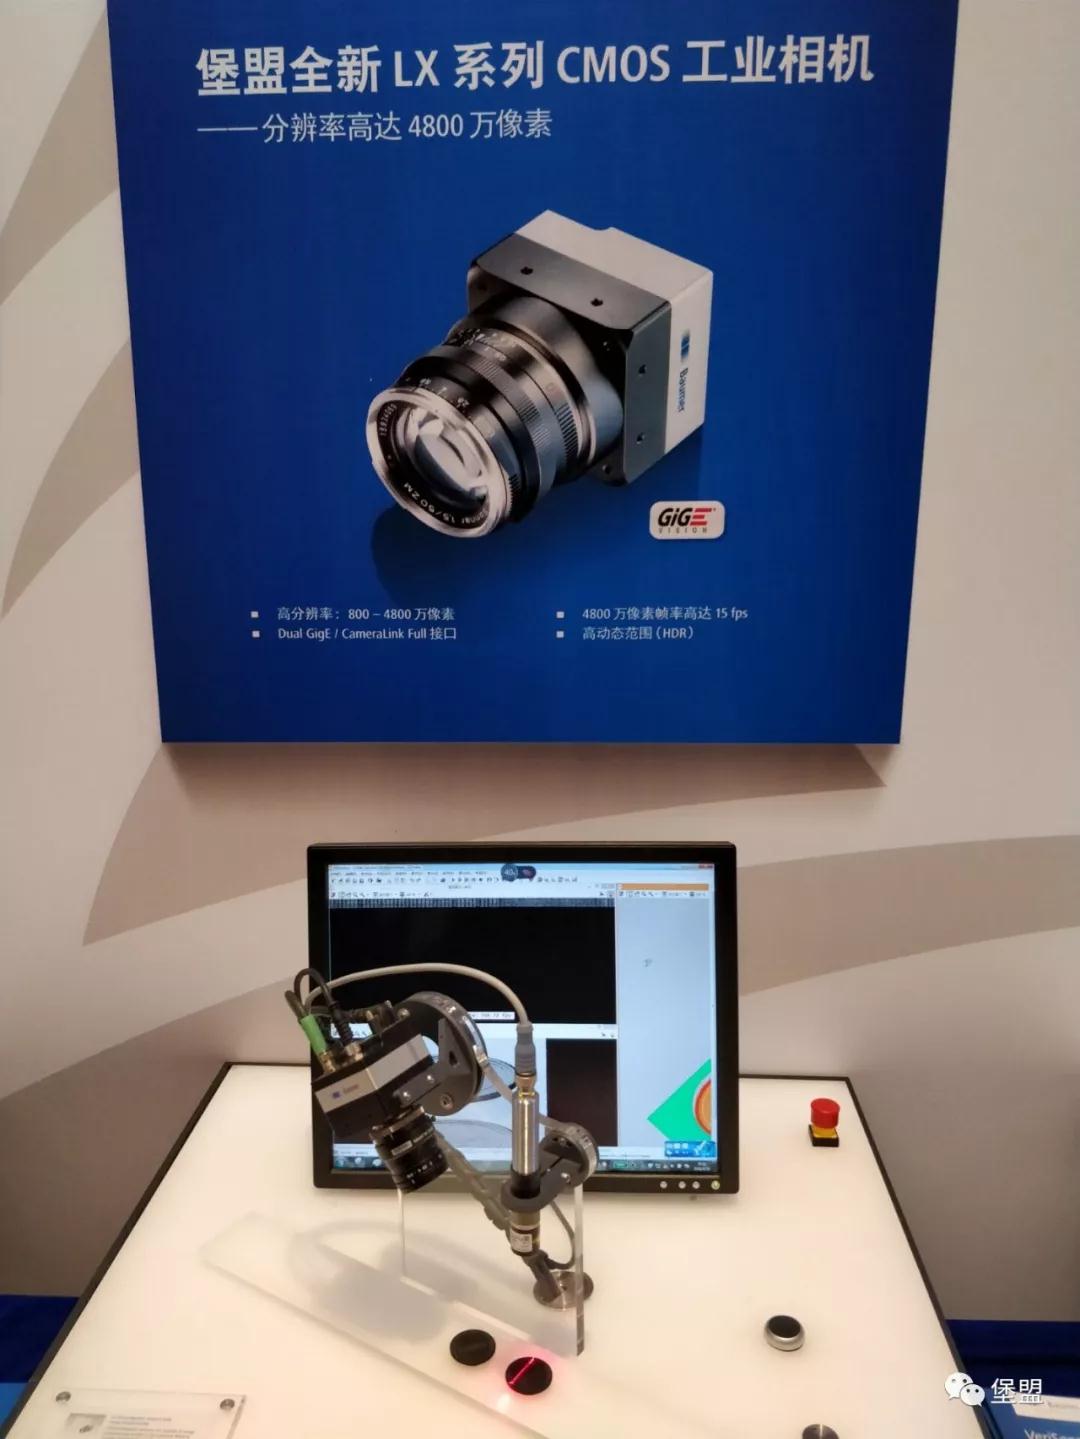 堡盟全新LX系列CMOS工业相机